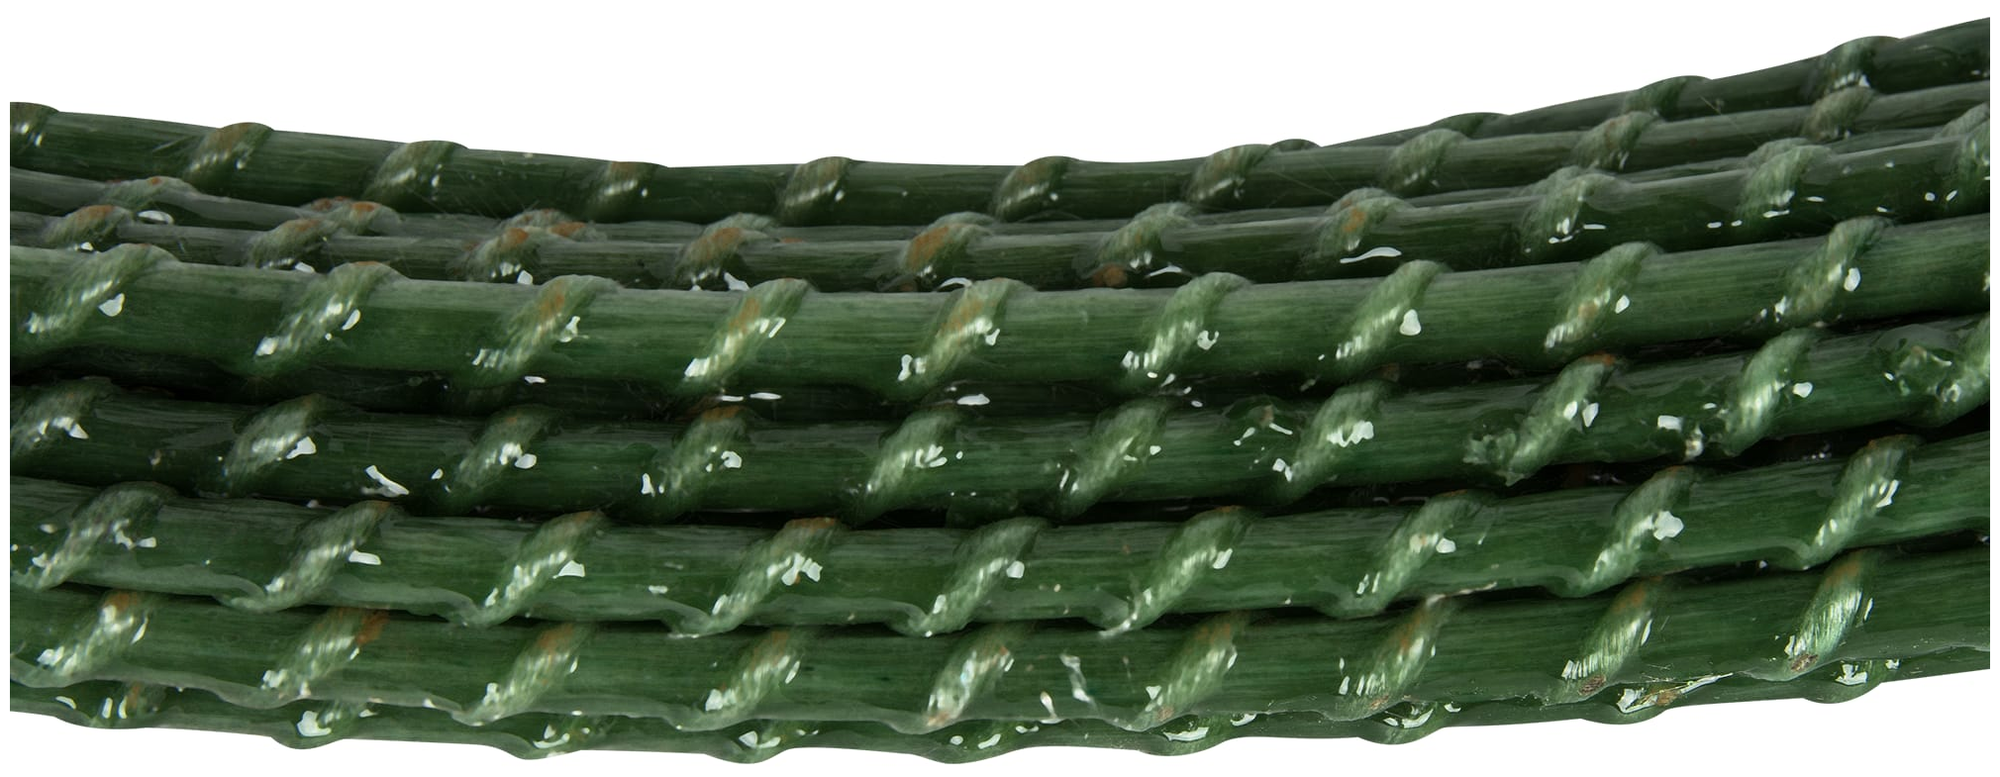 Колышки садовые CompositArm, длина 100 см, диаметр 8 мм, зеленые, 20 шт в упаковке - фотография № 6